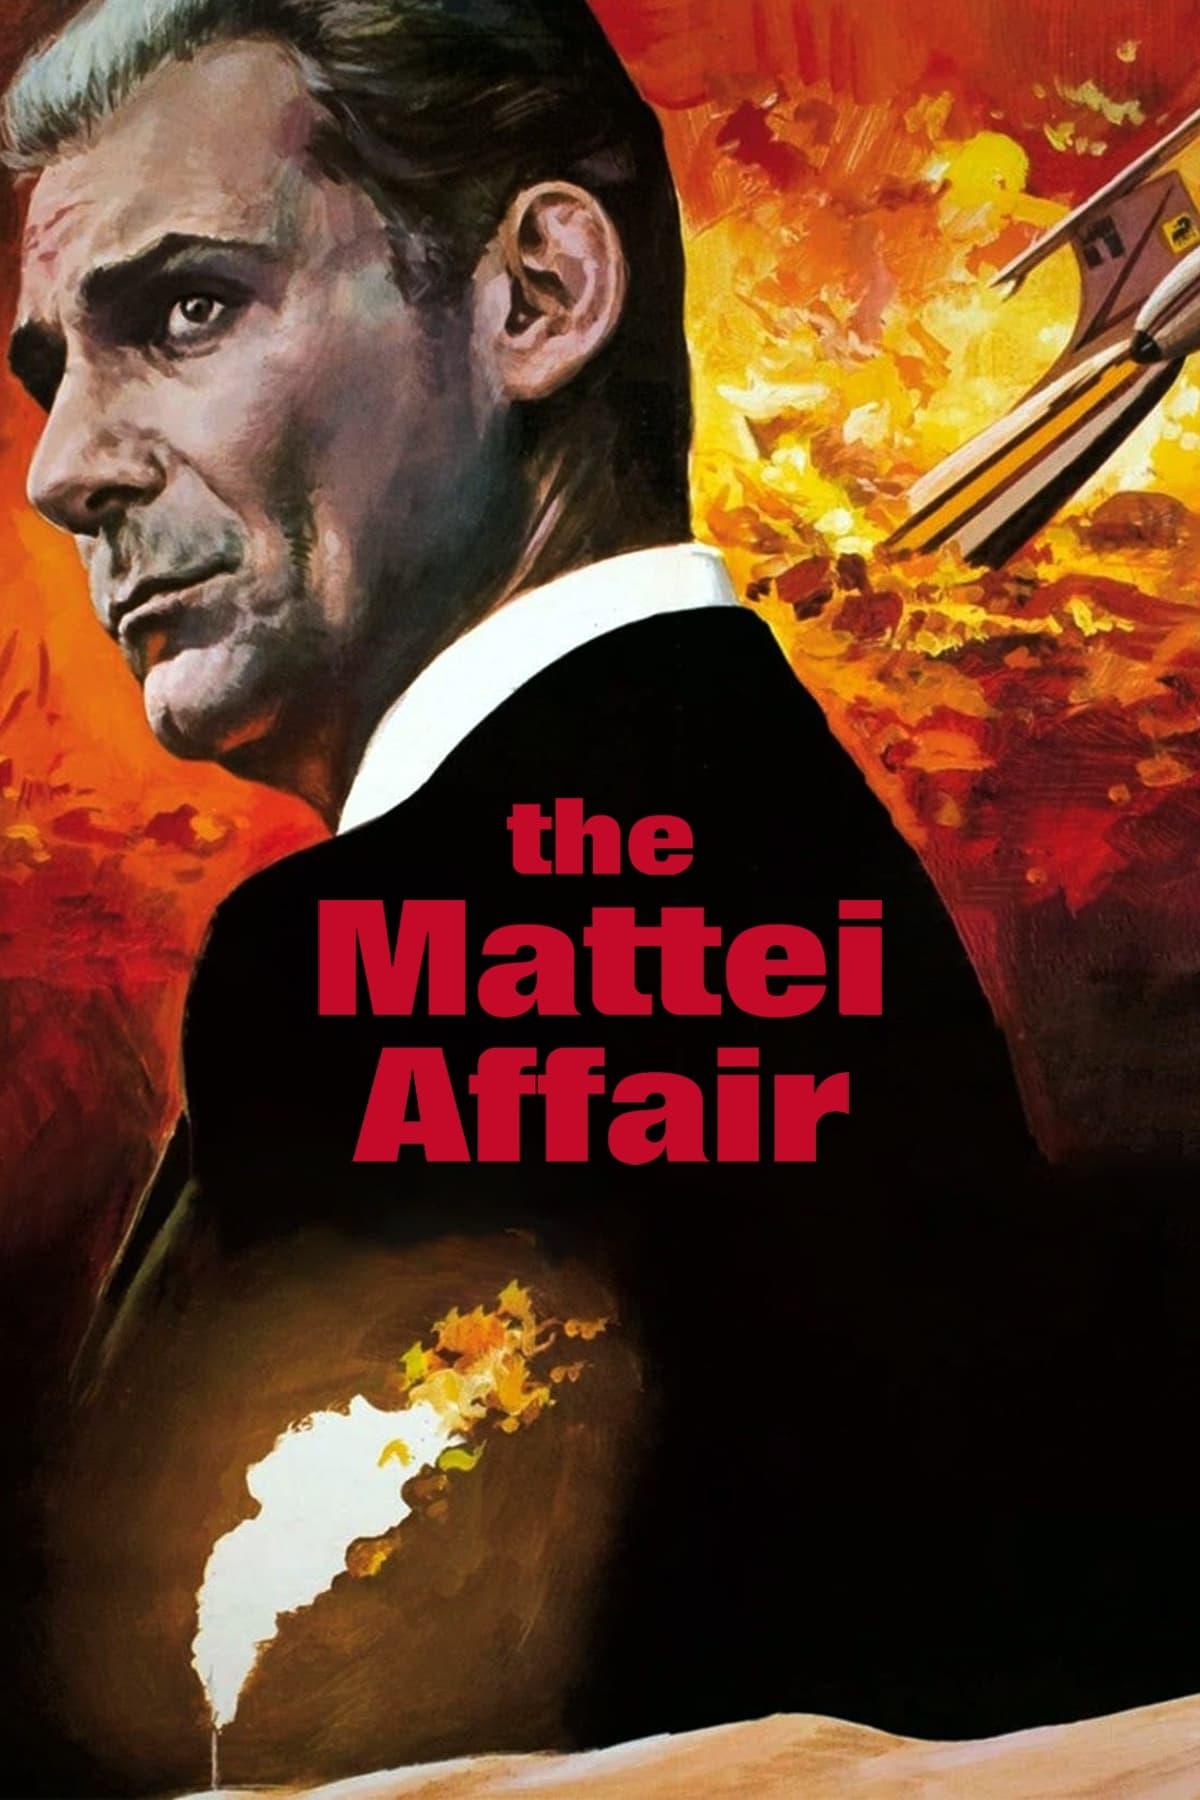 The Mattei Affair poster